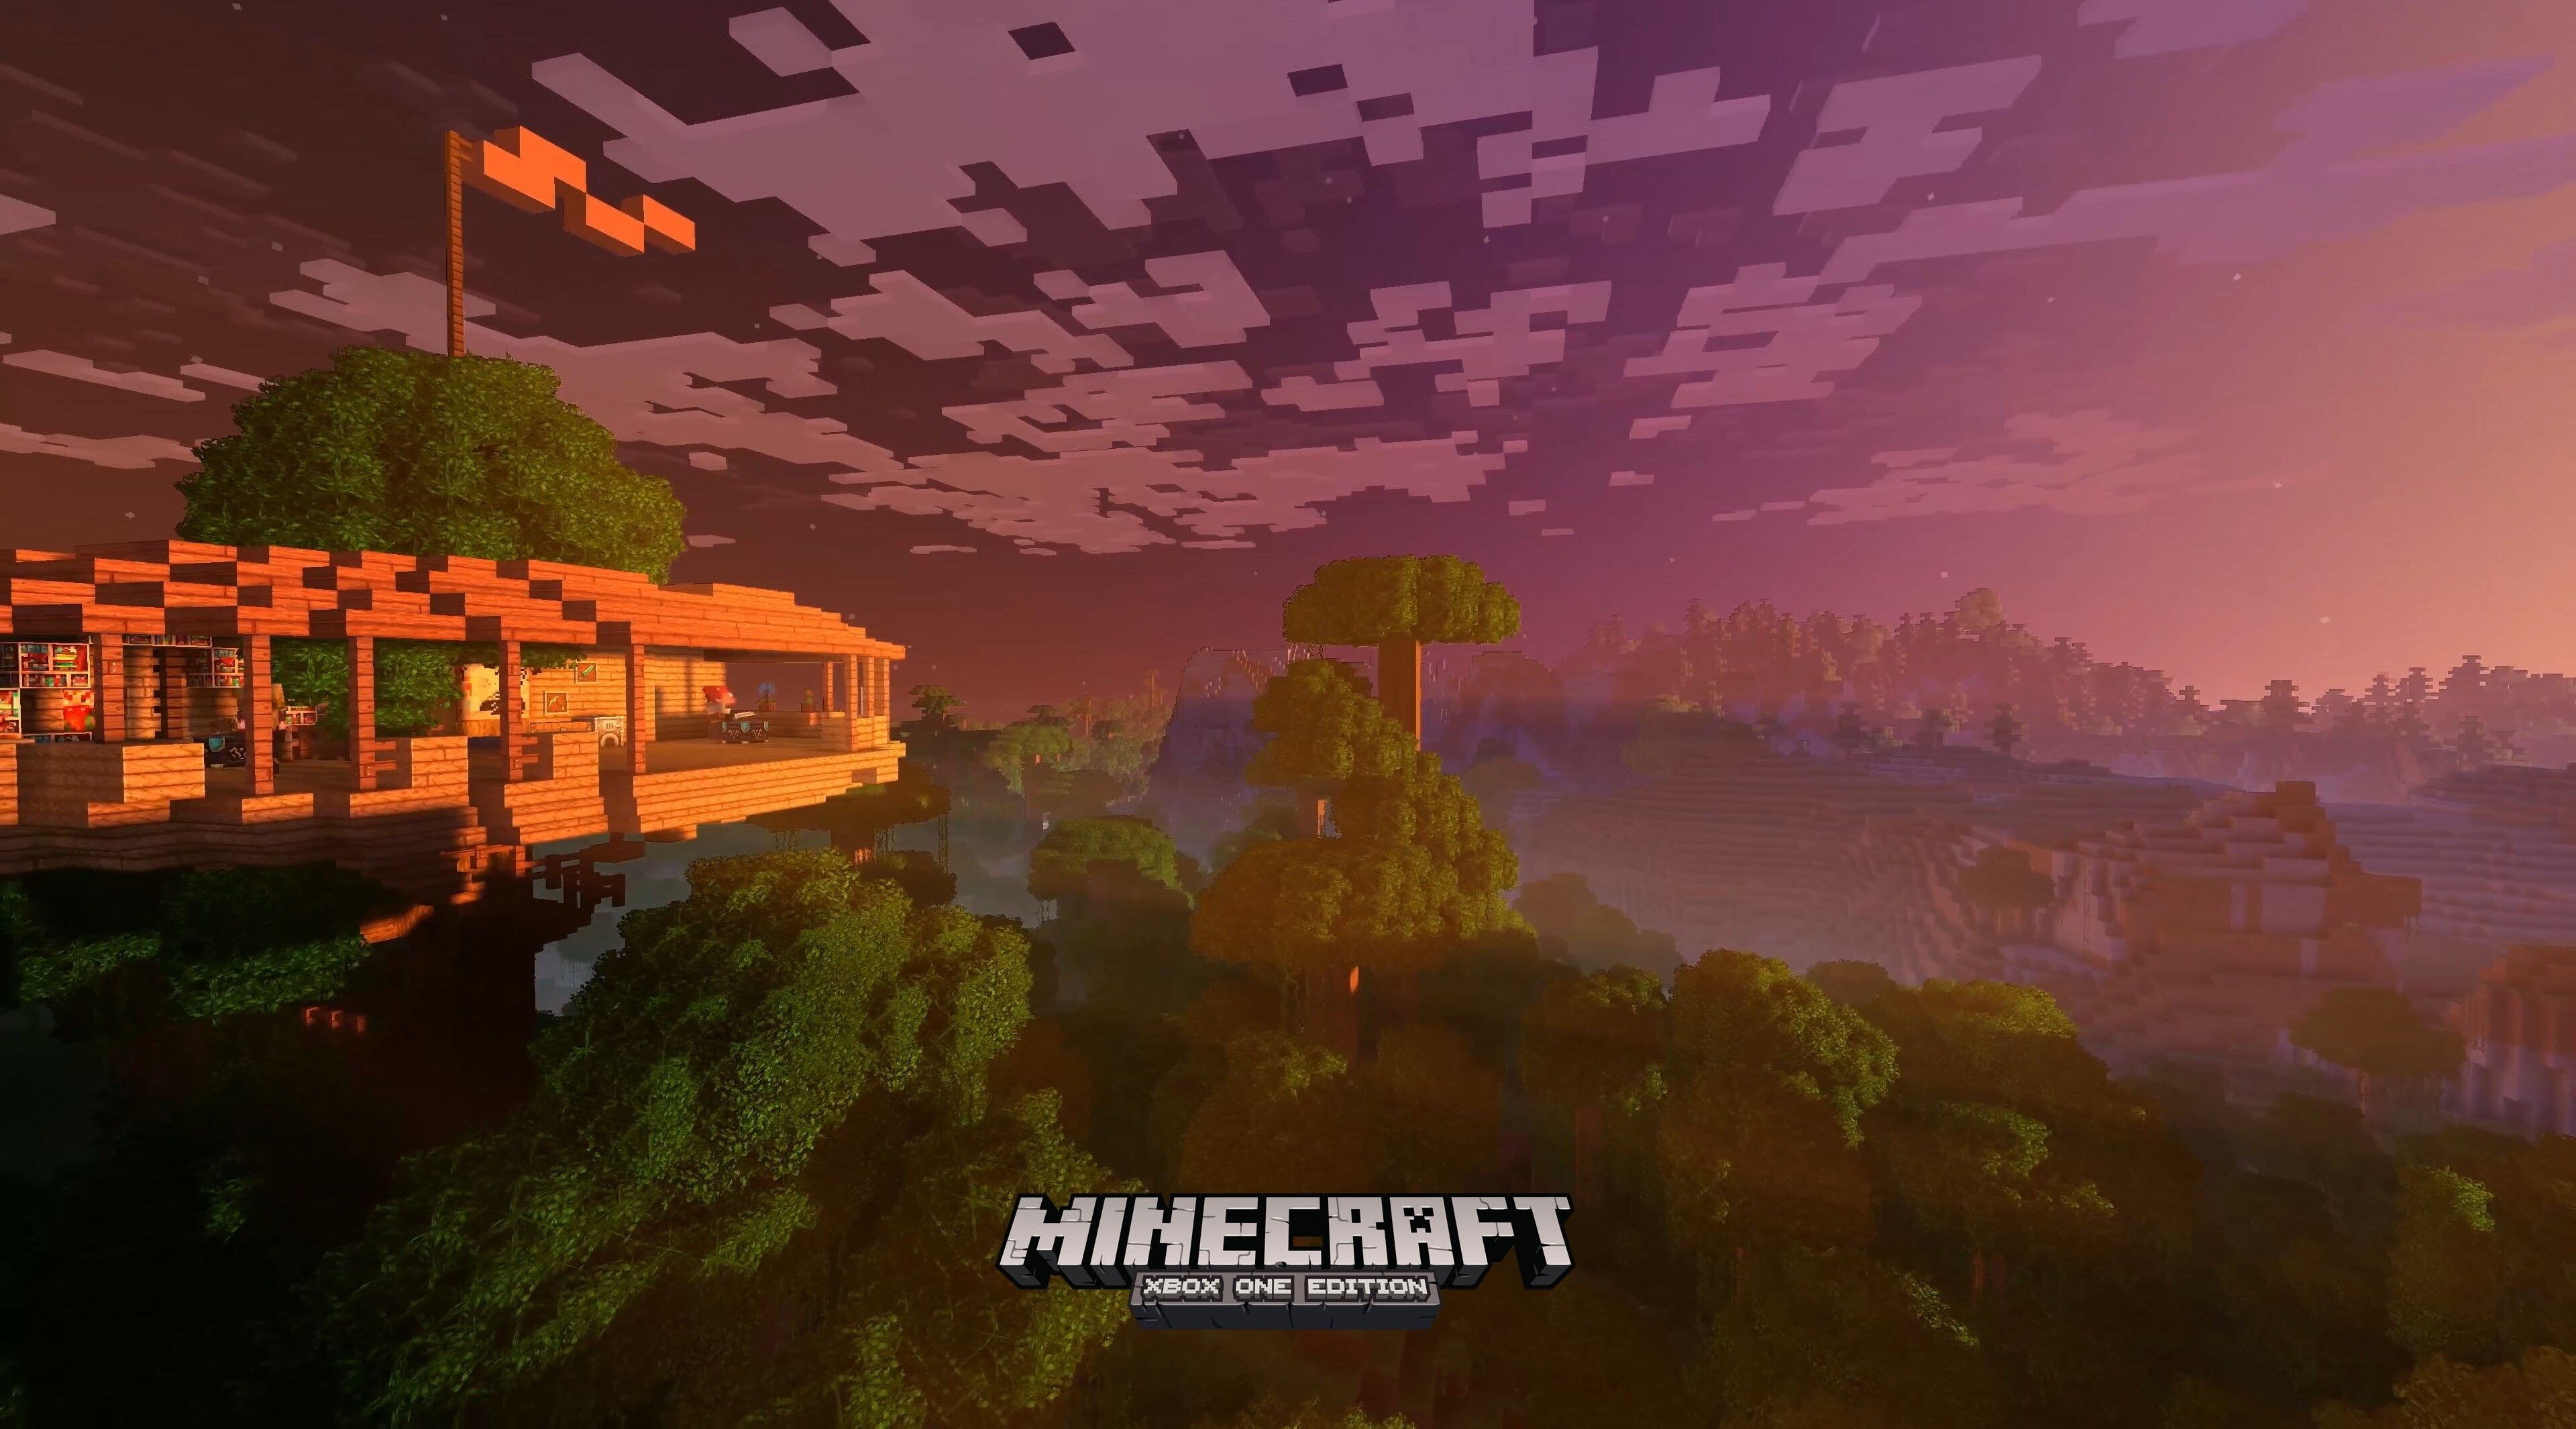 Minecraft được xem là một trong những game được yêu cầu đồ họa cao, khiến cho các ảnh Minecraft 4K wallpapers trở nên sống động hơn bao giờ hết. Bạn sẽ có cơ hội chiêm ngưỡng những tuyệt tác đẹp mê hồn của game này ngay tại màn hình máy tính của mình.